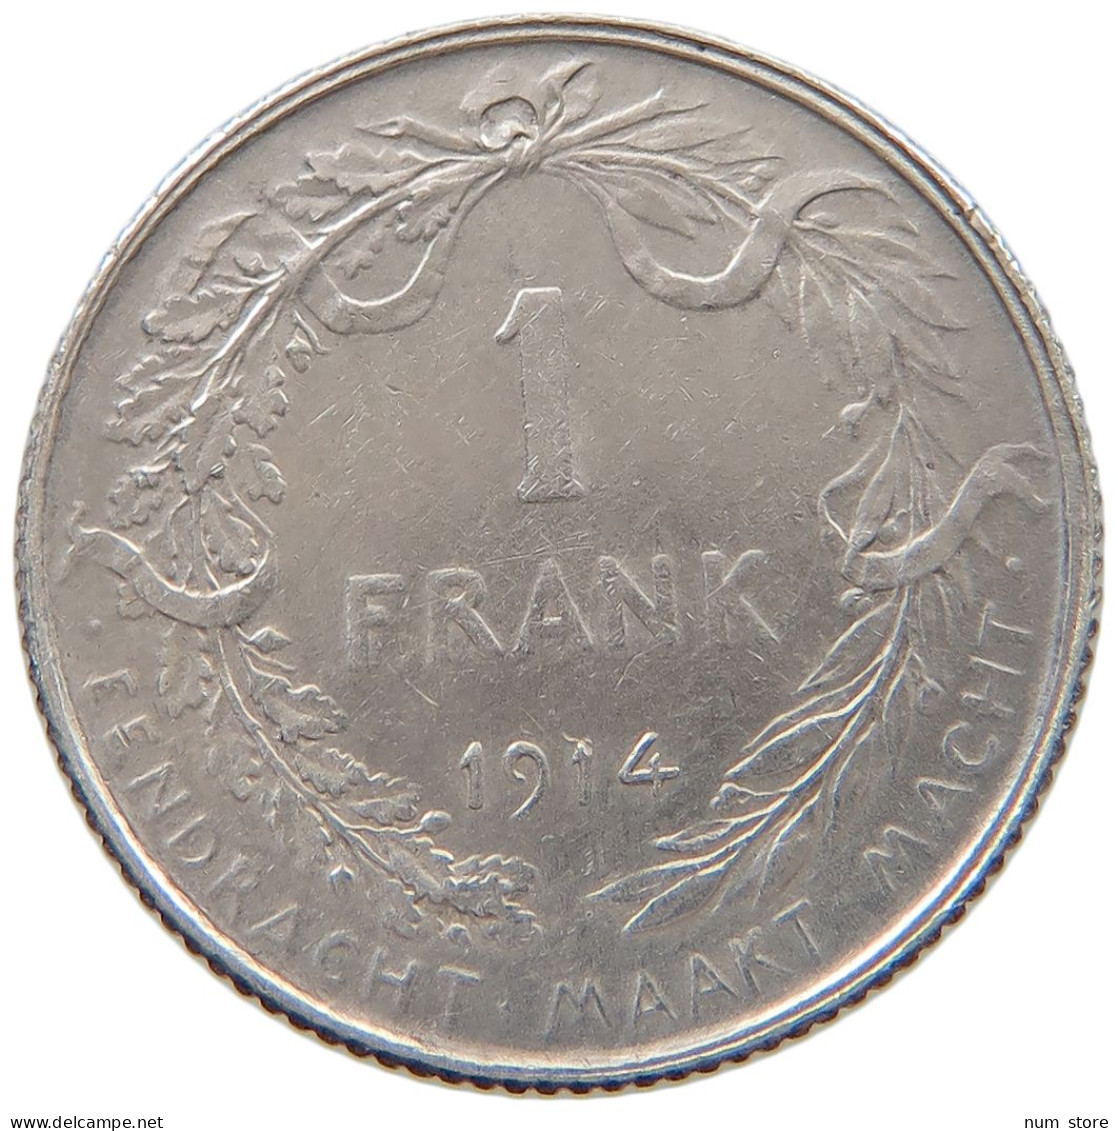 BELGIUM FRANC 1914 Albert I. 1909-1934 #a057 0405 - 1 Franc